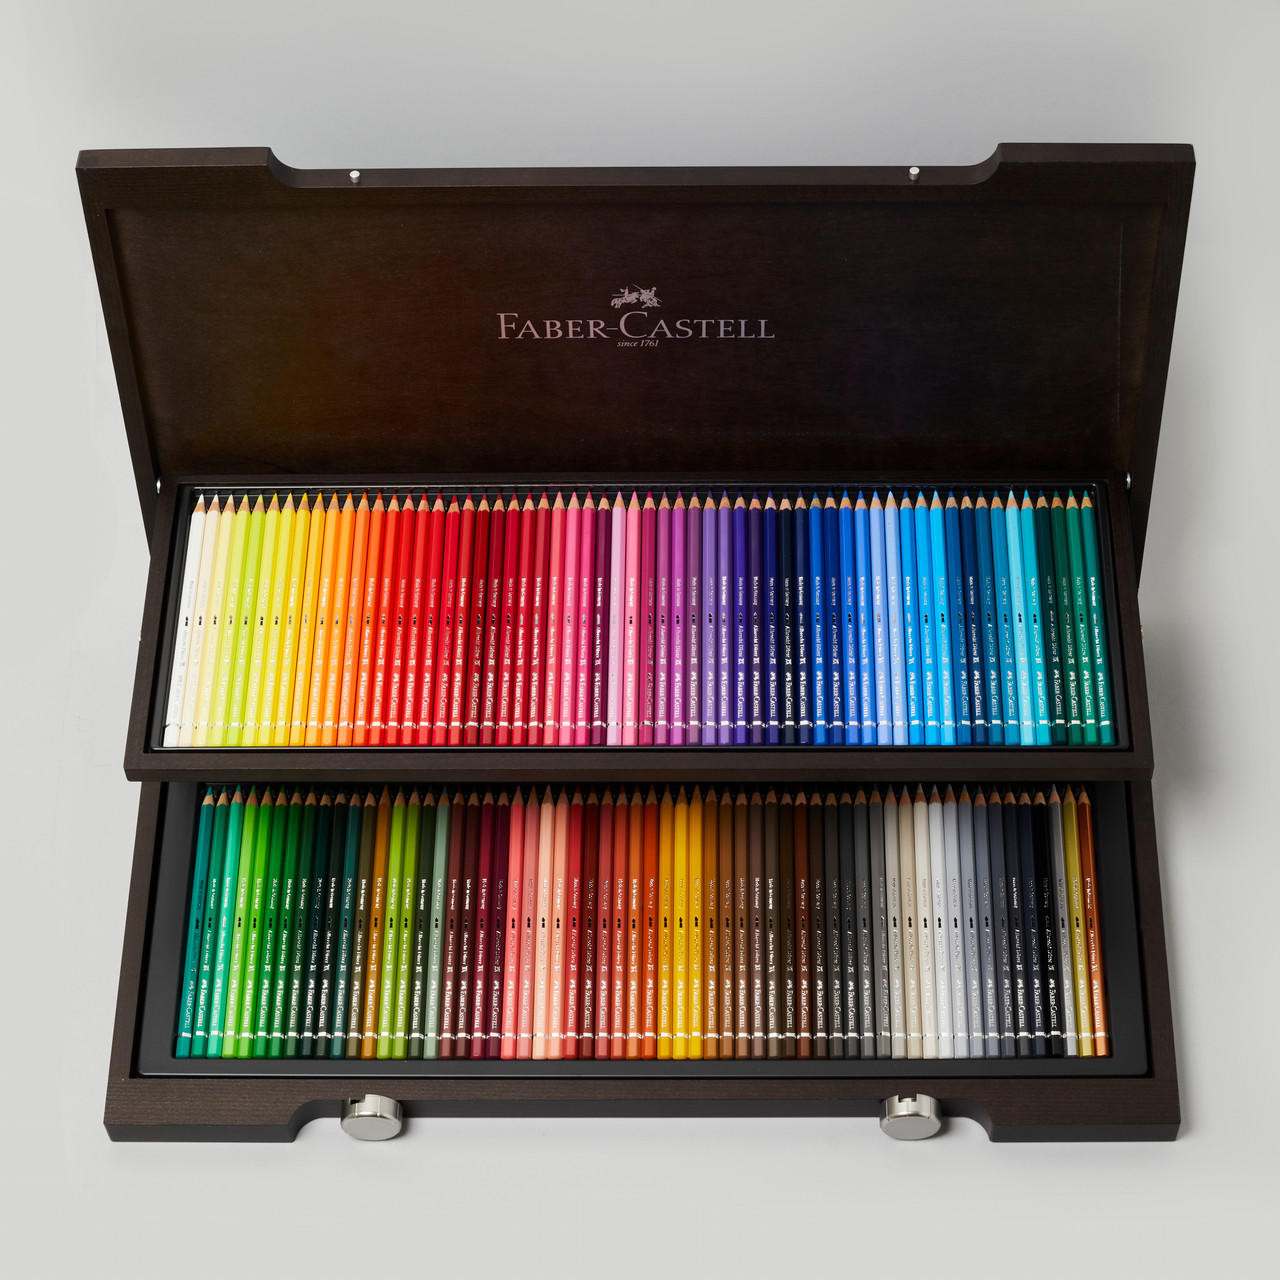 Faber-Castell Faber Castell Albrecht Durer Artists’ Watercolour Pencils Wooden Box Assorted Colours Set of 120